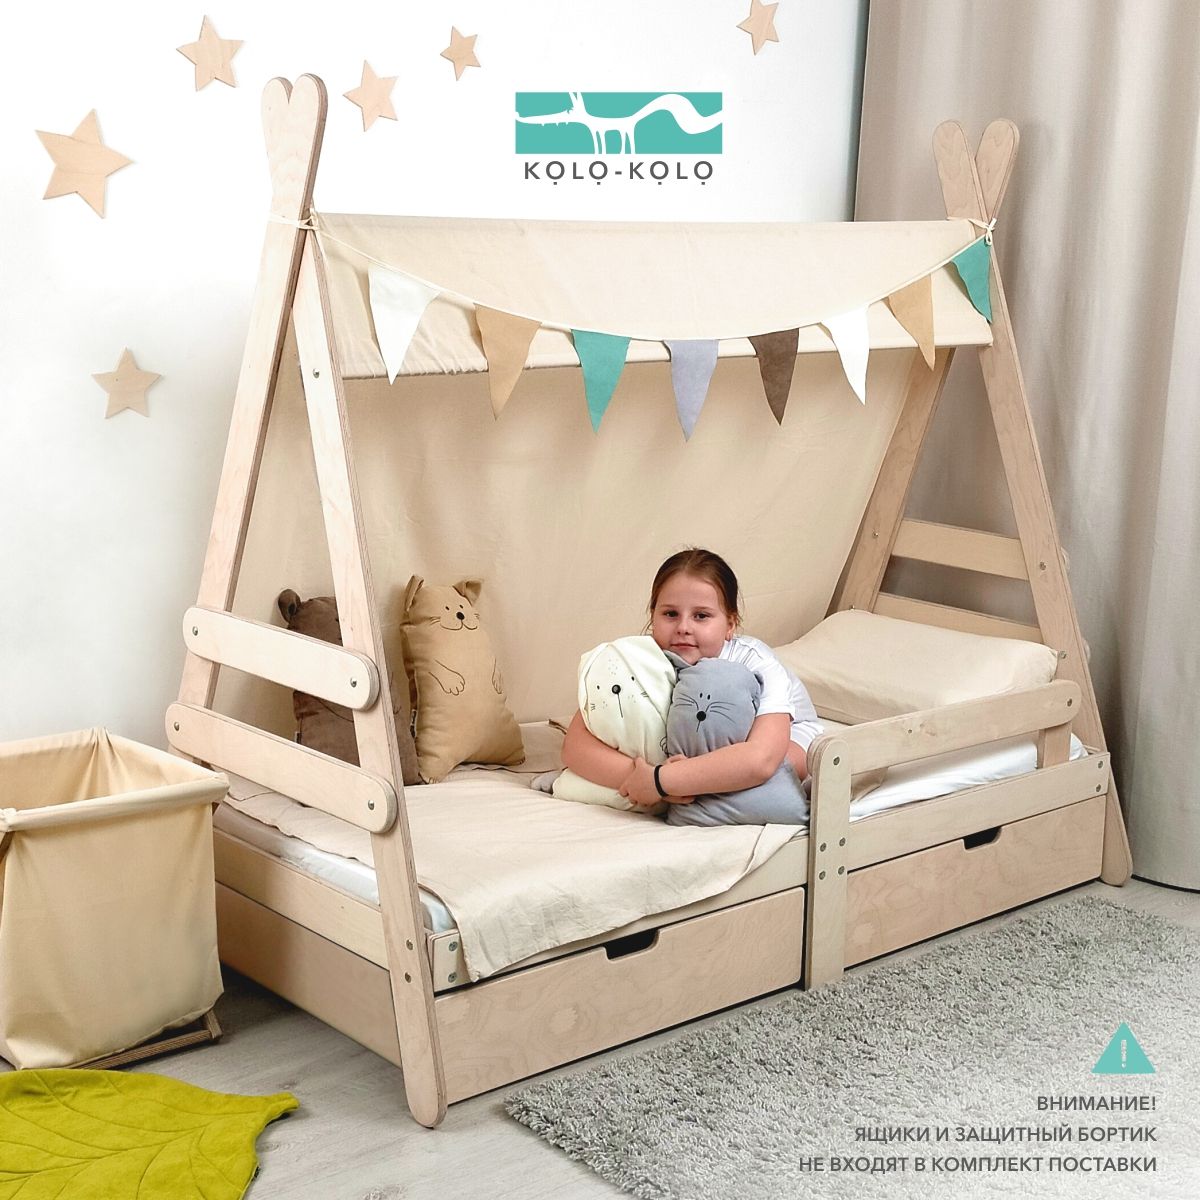 Сборка детской кроватки — смотрите советы и рекомендации в блоге Mr. Doors